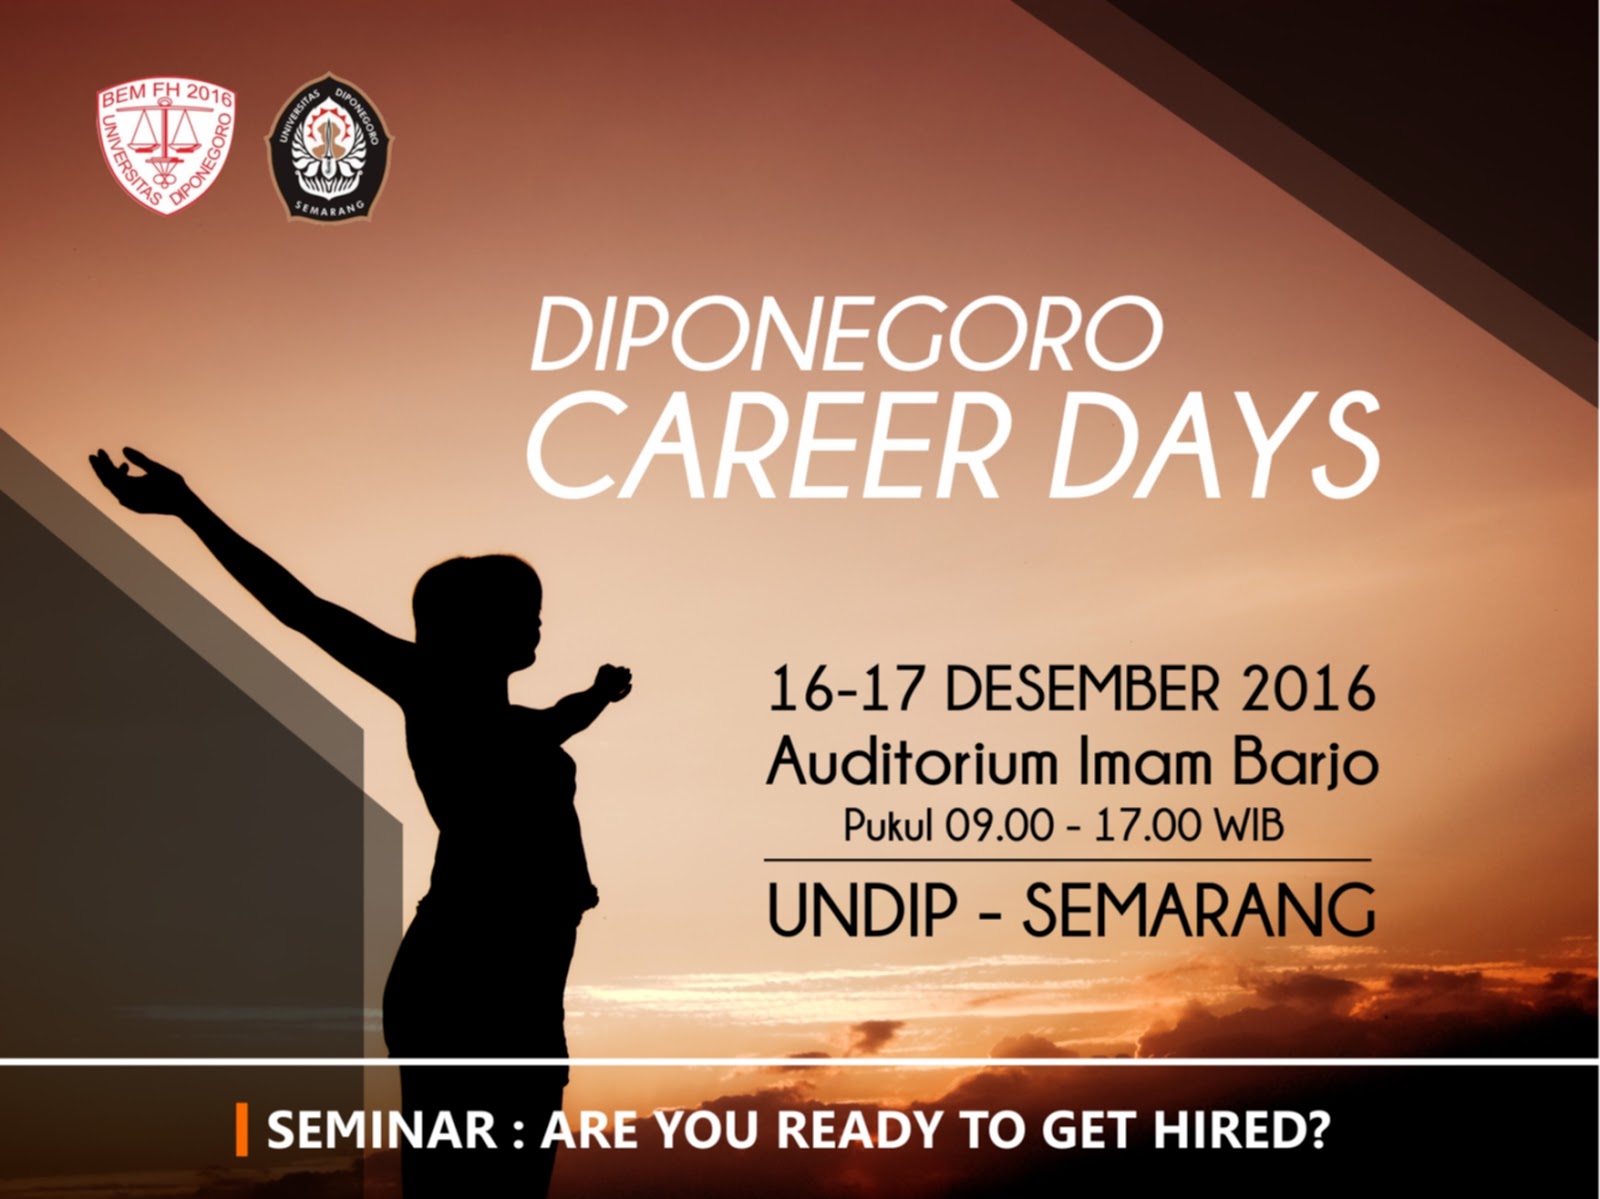 Bursa Kerja Diponegoro Career Days Tanggal 16 - 17 